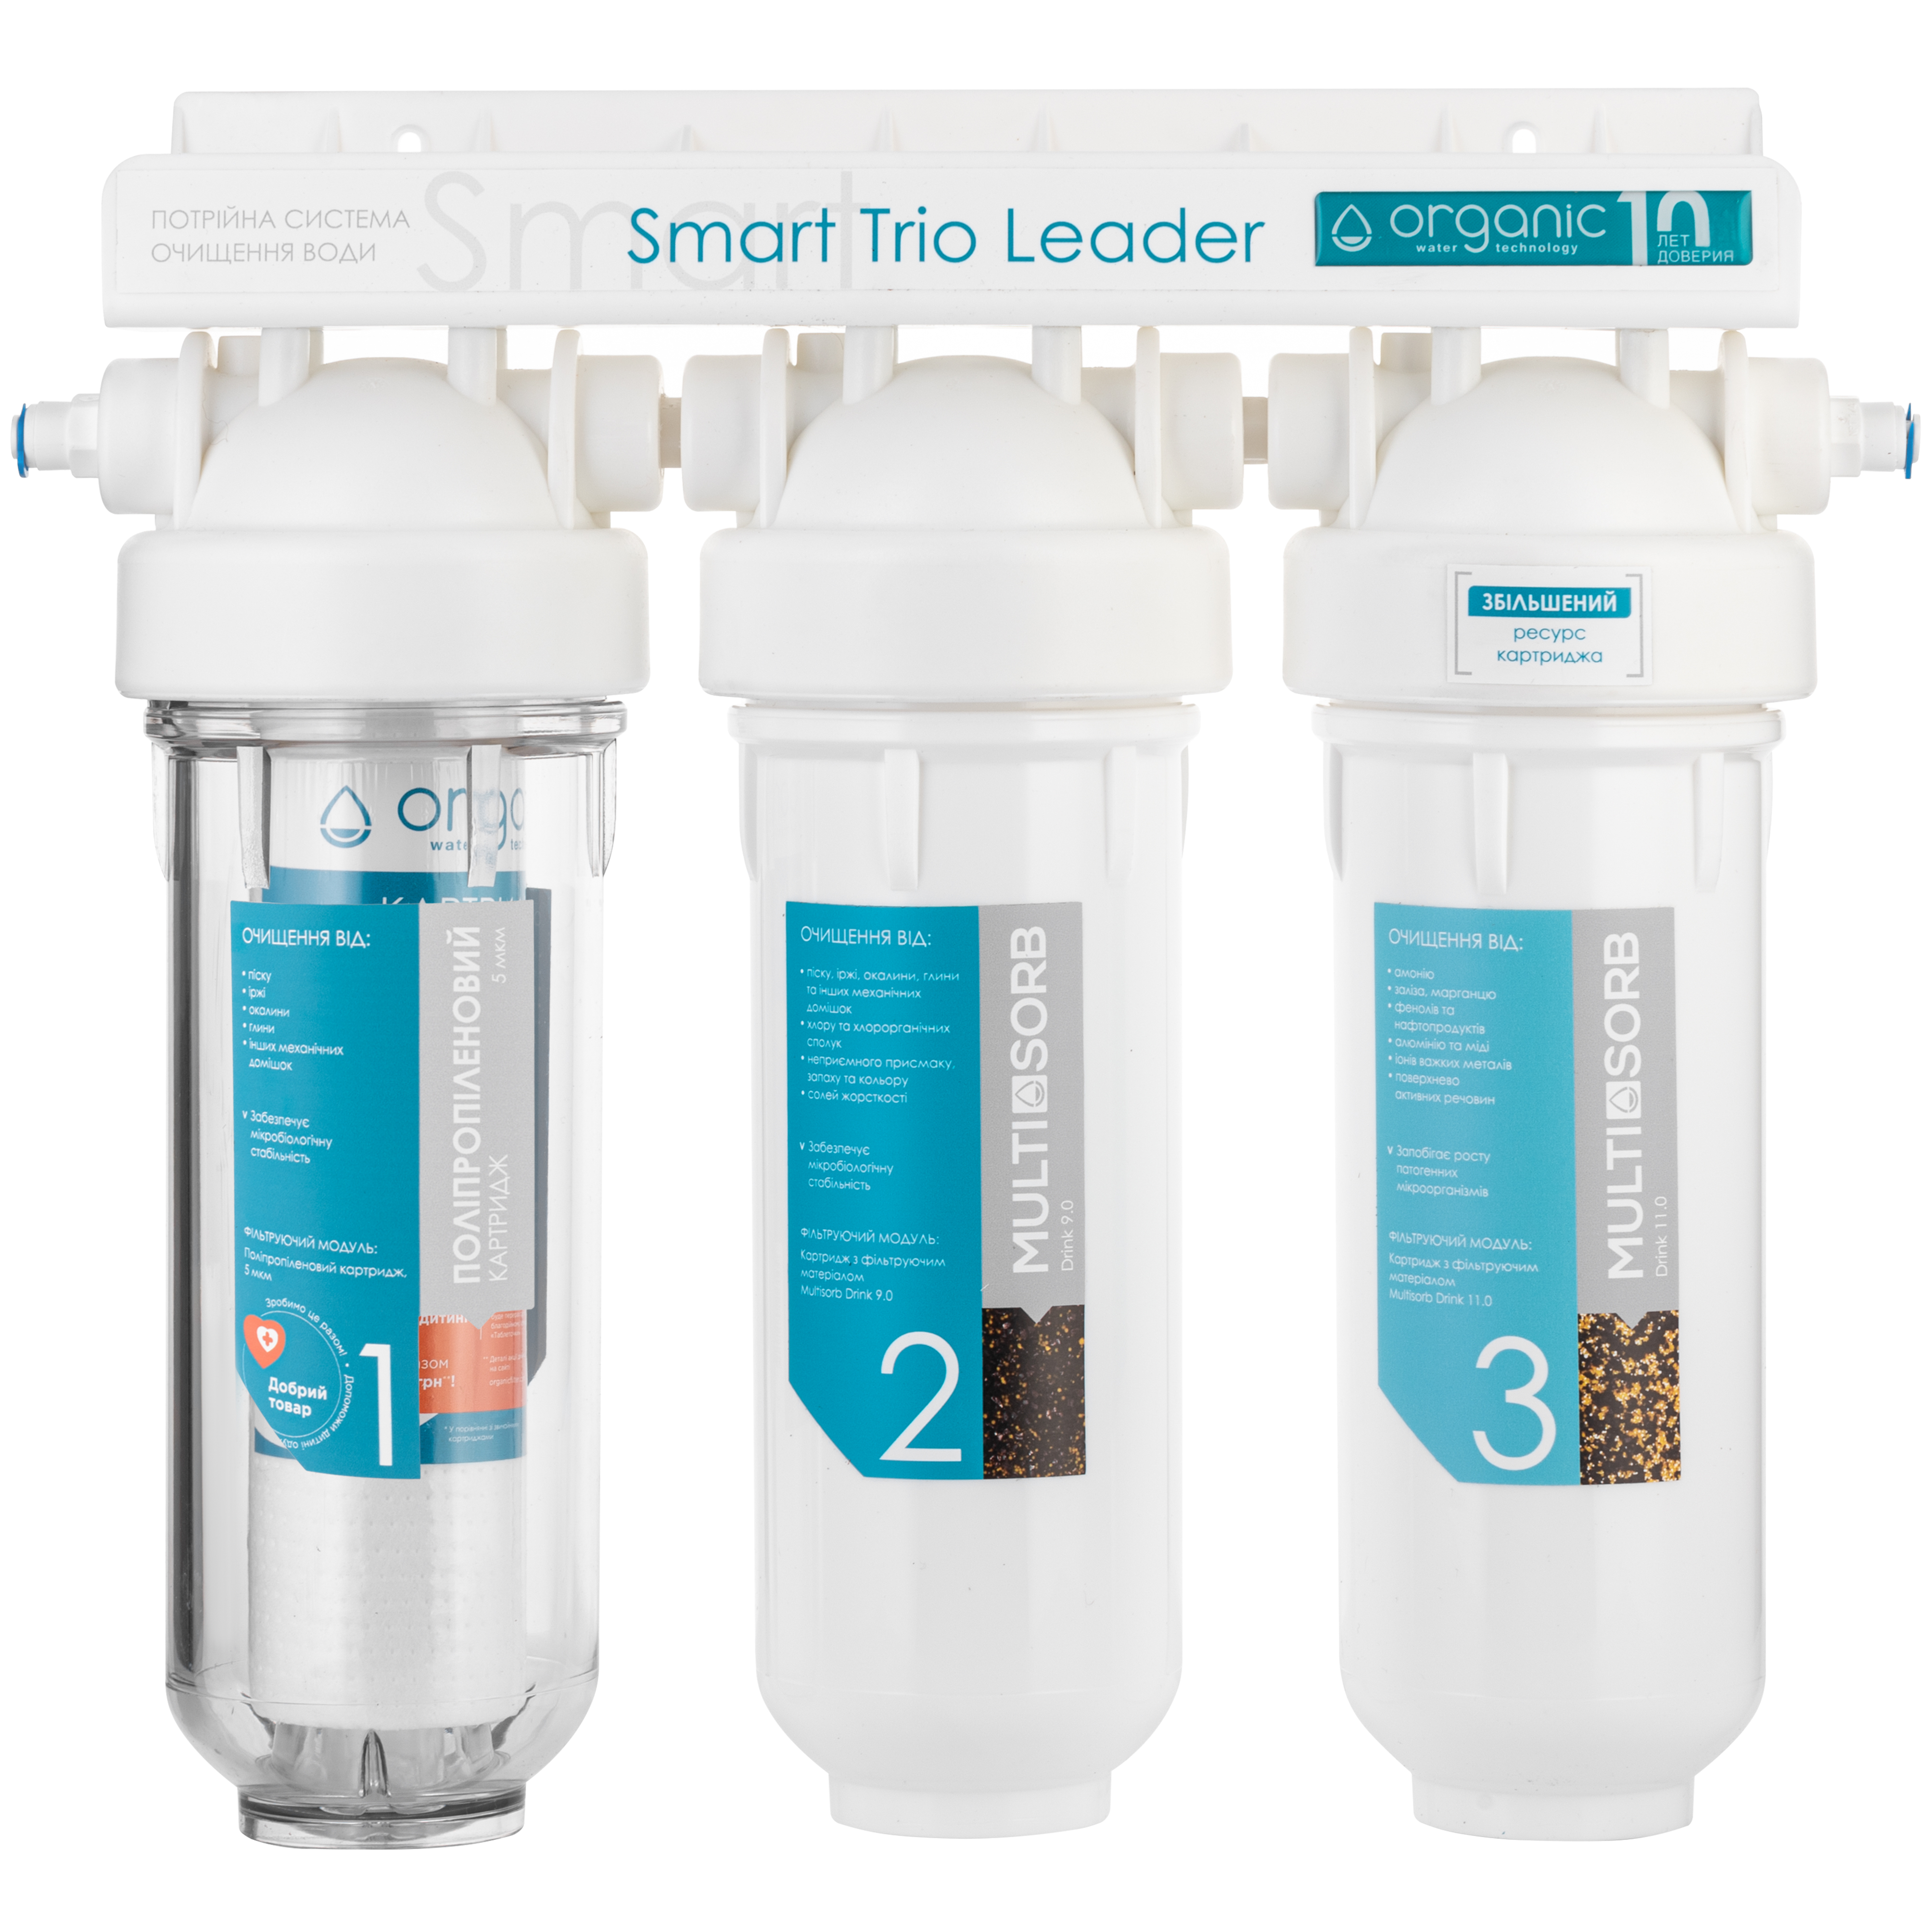 Характеристики фильтр organic для воды Organic Smart TRIO LEADER